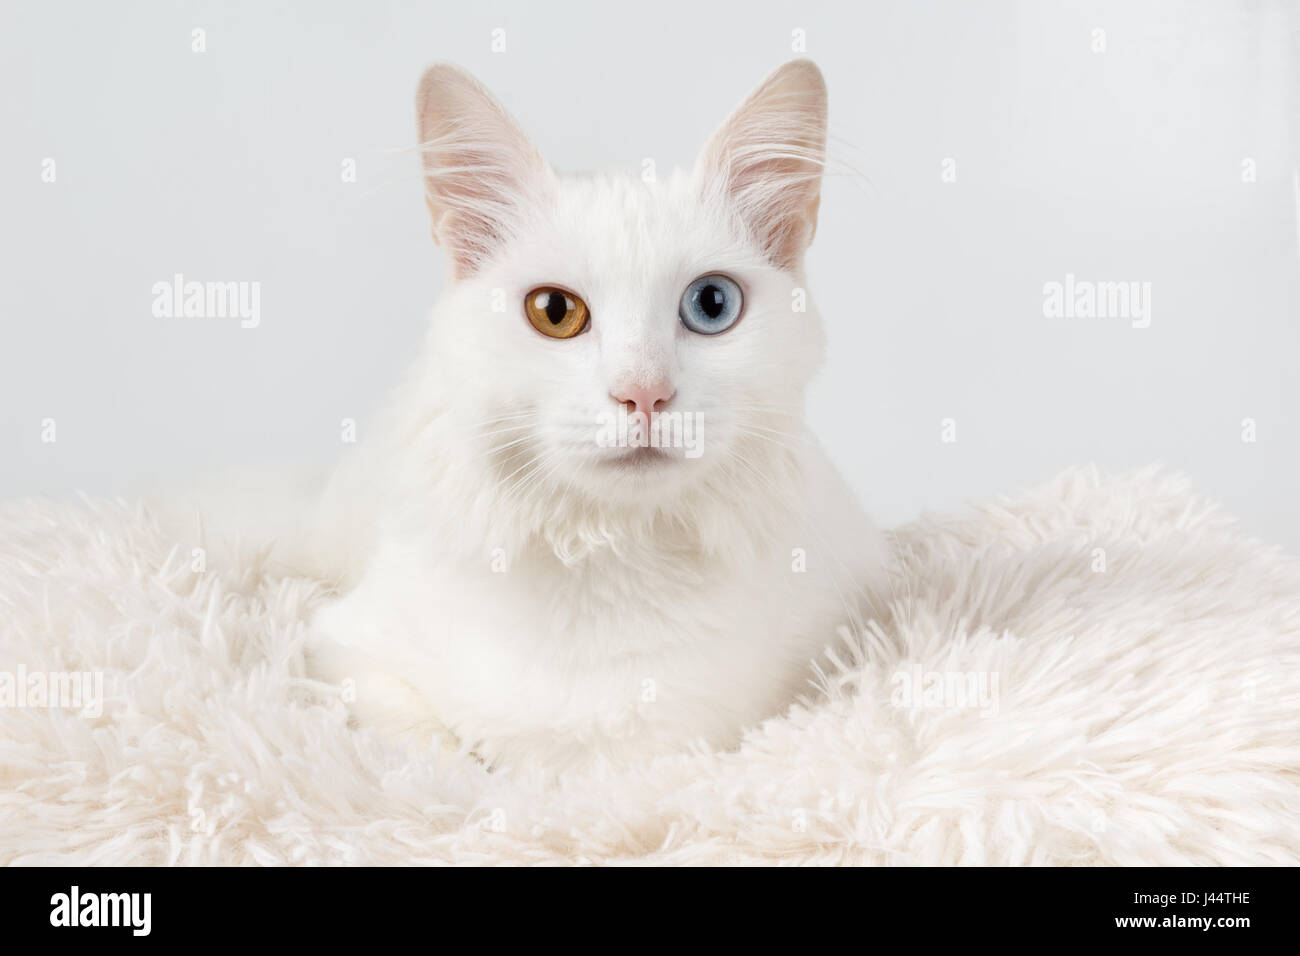 Weiße Katze mit anderen farbigen Augen. Studio-Porträt einer niedlichen weißen Odd-eyed Katze, sitzend auf einem Kissen Stockfoto